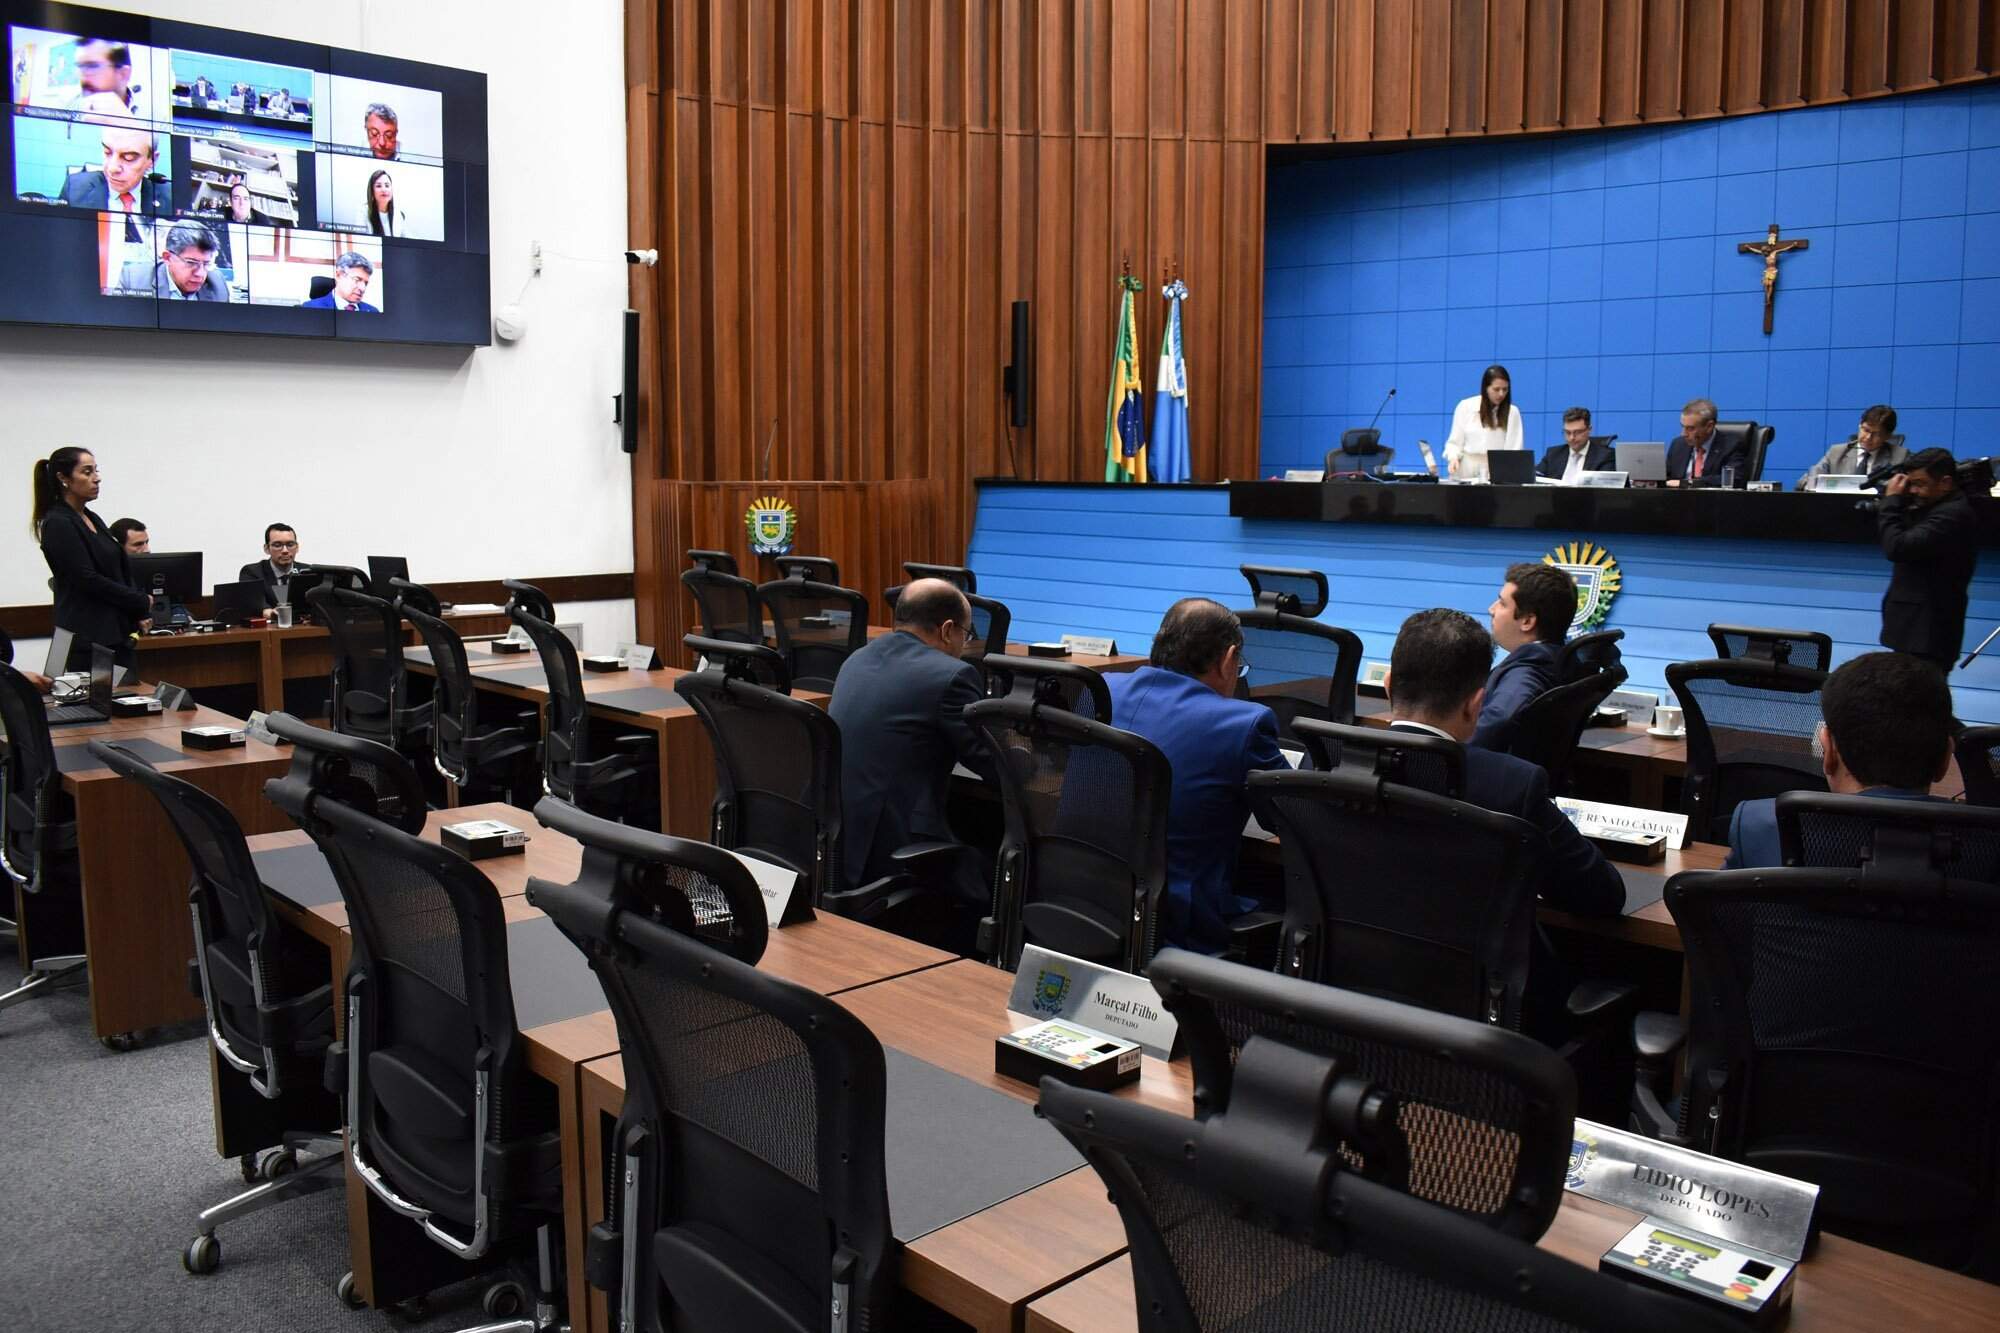 Investigação sobre jogo do bicho chegou a grupo de SP, diz secretário -  Cidades - Campo Grande News